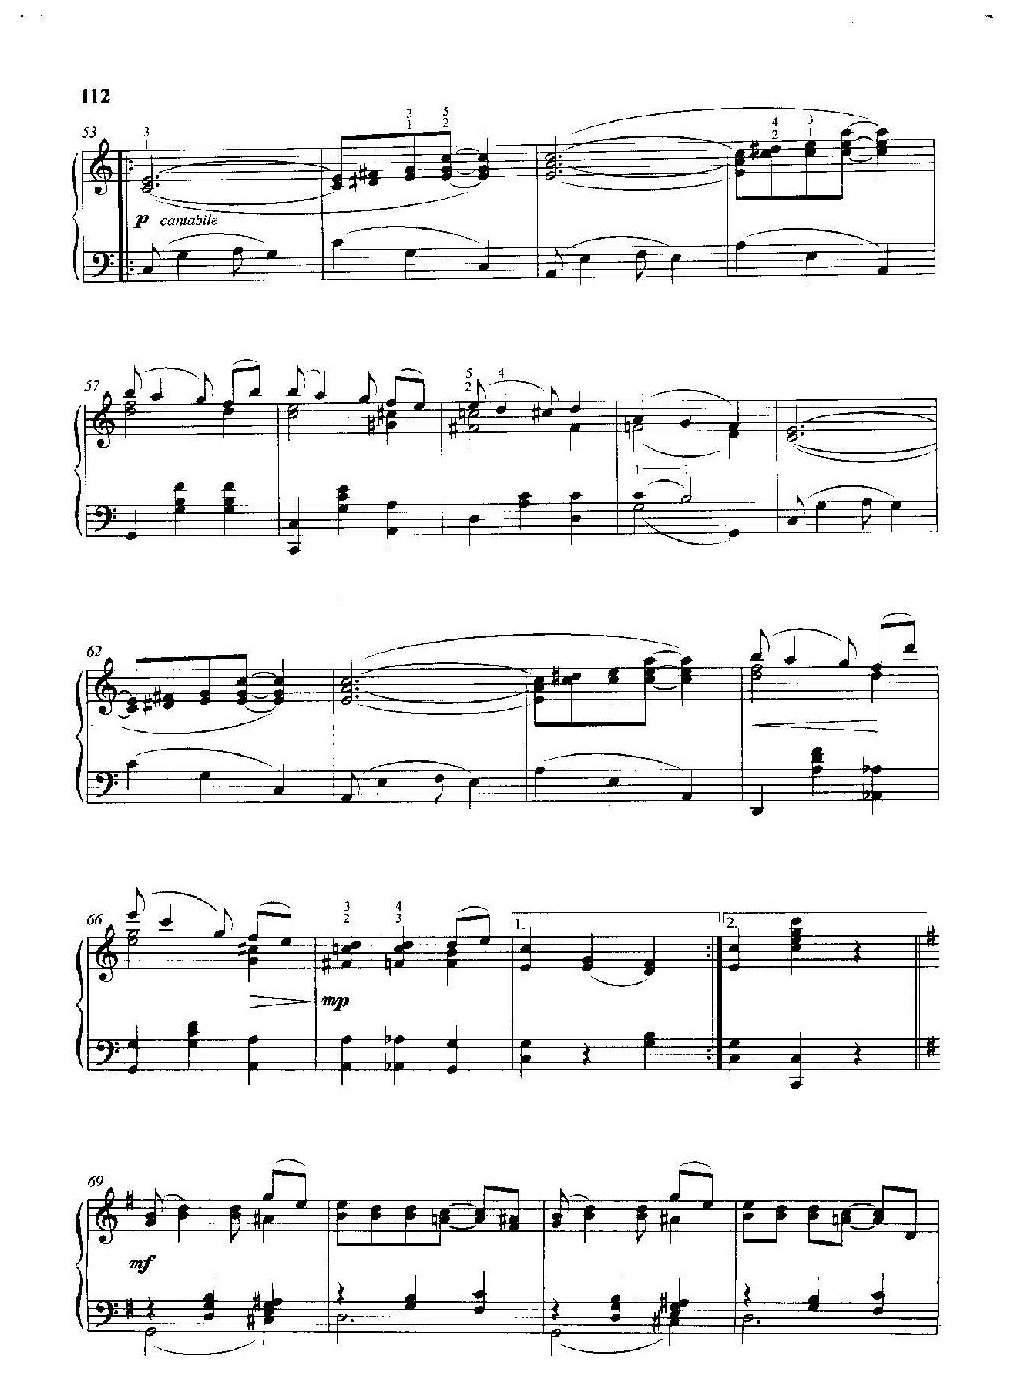 雷格泰姆钢琴乐谱《欢悦时光》雷格泰姆之王斯科特·乔普林